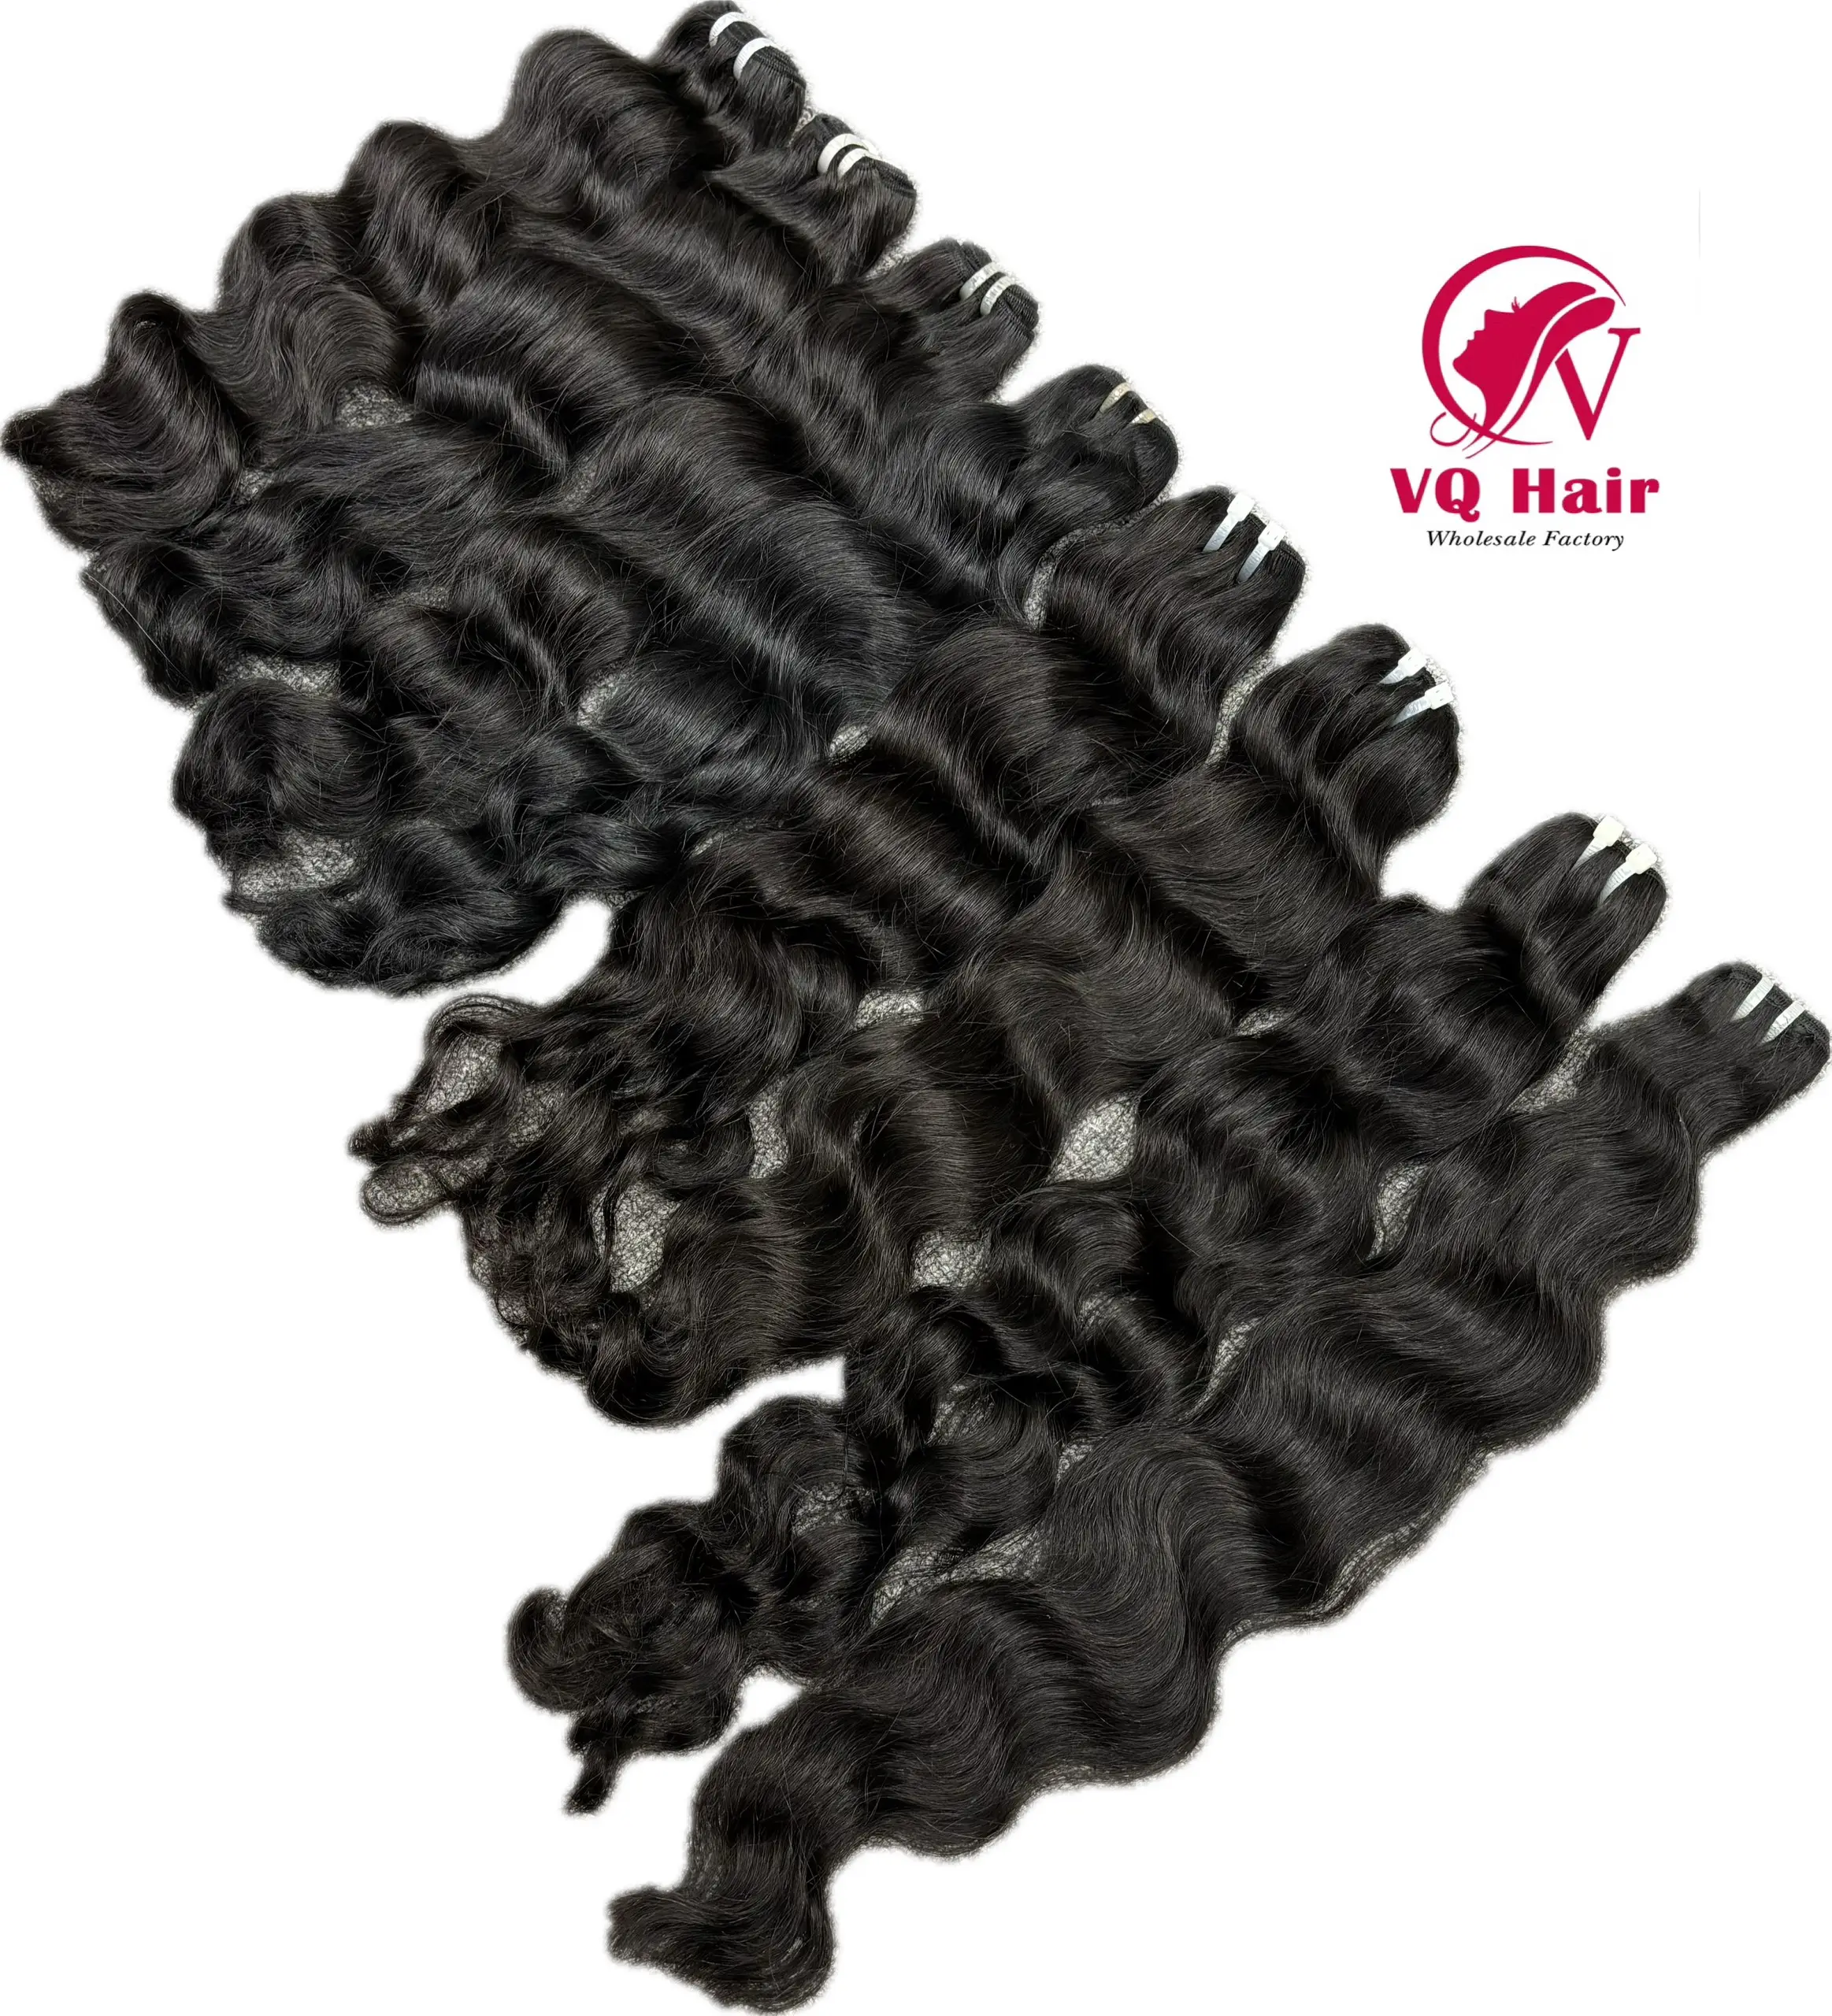 Natürliche naturwellen-echthaarverlängerungen mit an kopfhaut ausgerichtetes vietnamesisches Haar Anbieter dauerhaarverlängerungen hochwertige Bündel